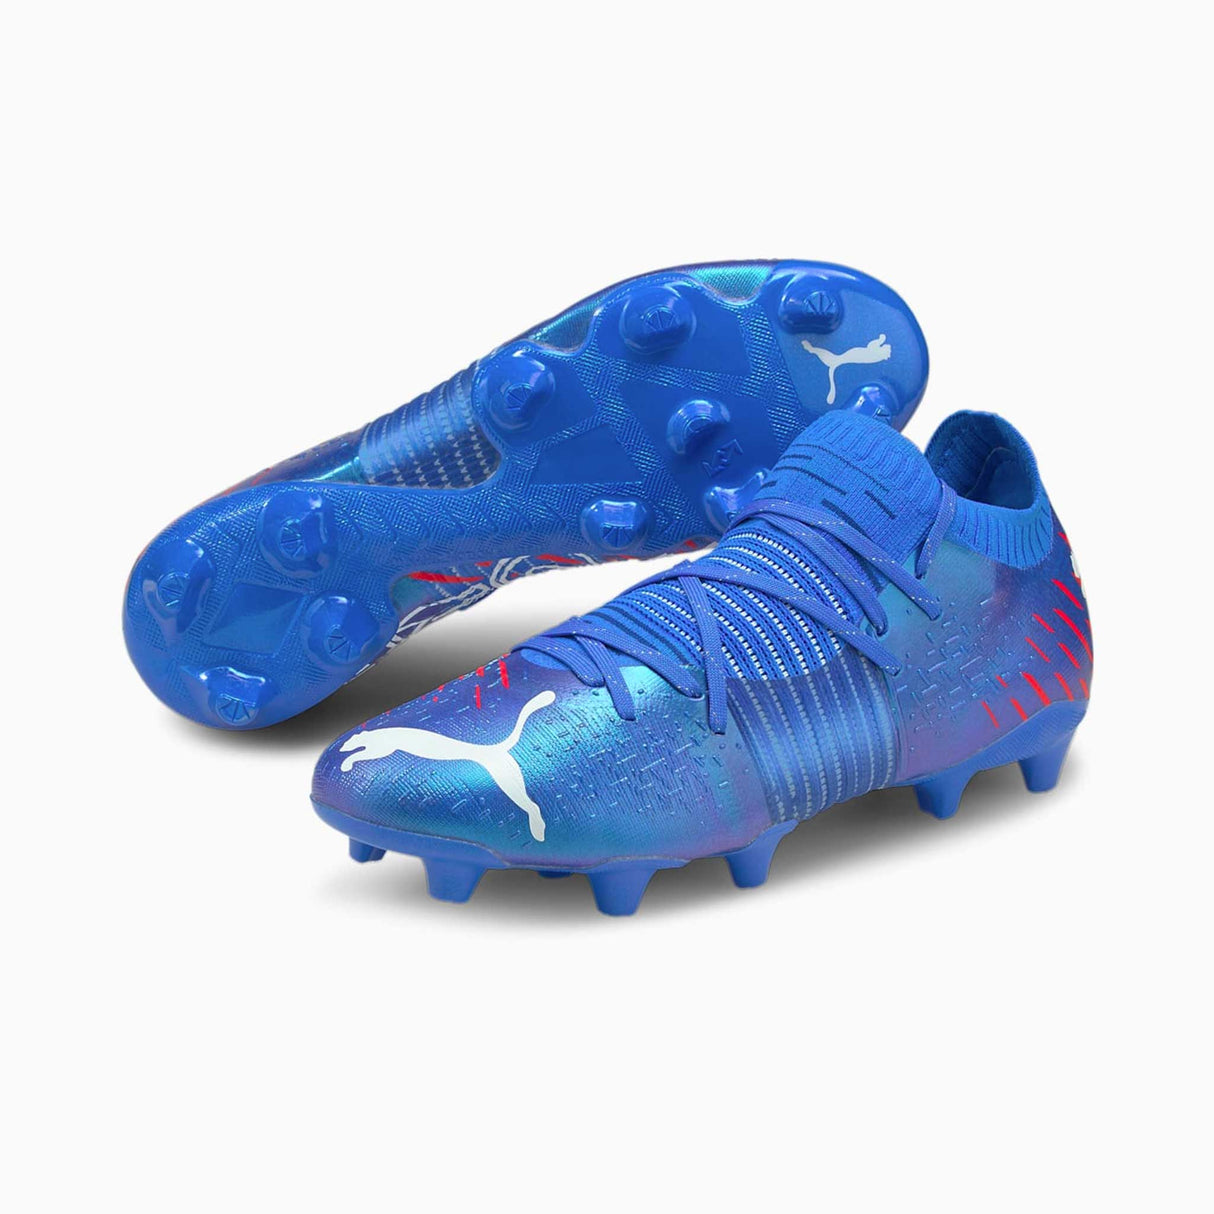 Puma Future Z 1.2 FG chaussures de soccer à crampons - Bluemazing / Sunblaze / Surf the web - paire